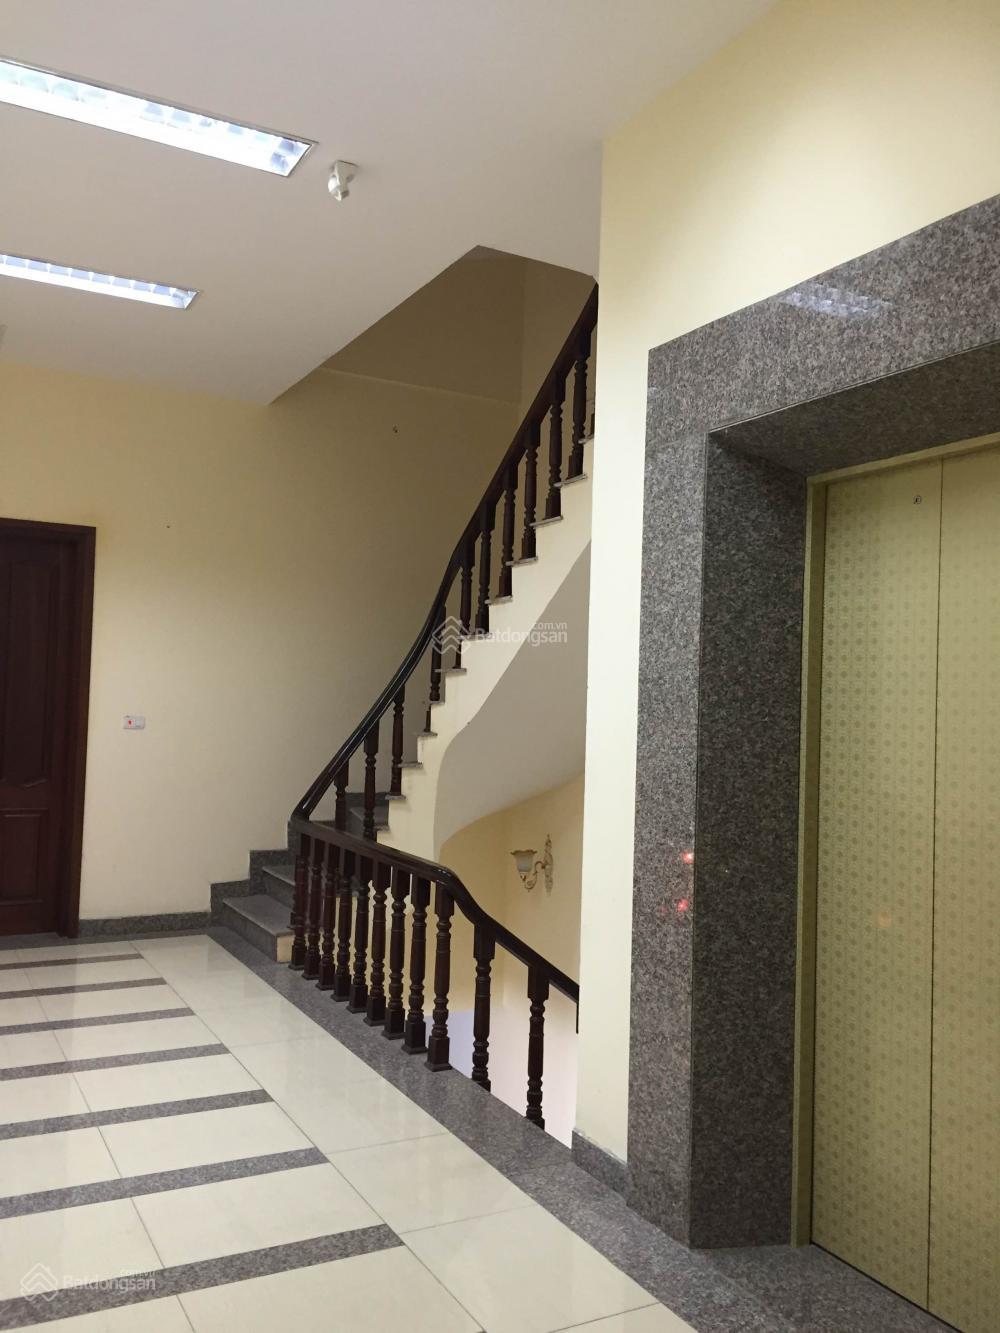 Cho thuê nhà thang máy xây mới tại mặt phố Minh Khai, DT 90m2 x 6 tầng, MT 5m, thông sàn, giá 70tr 1